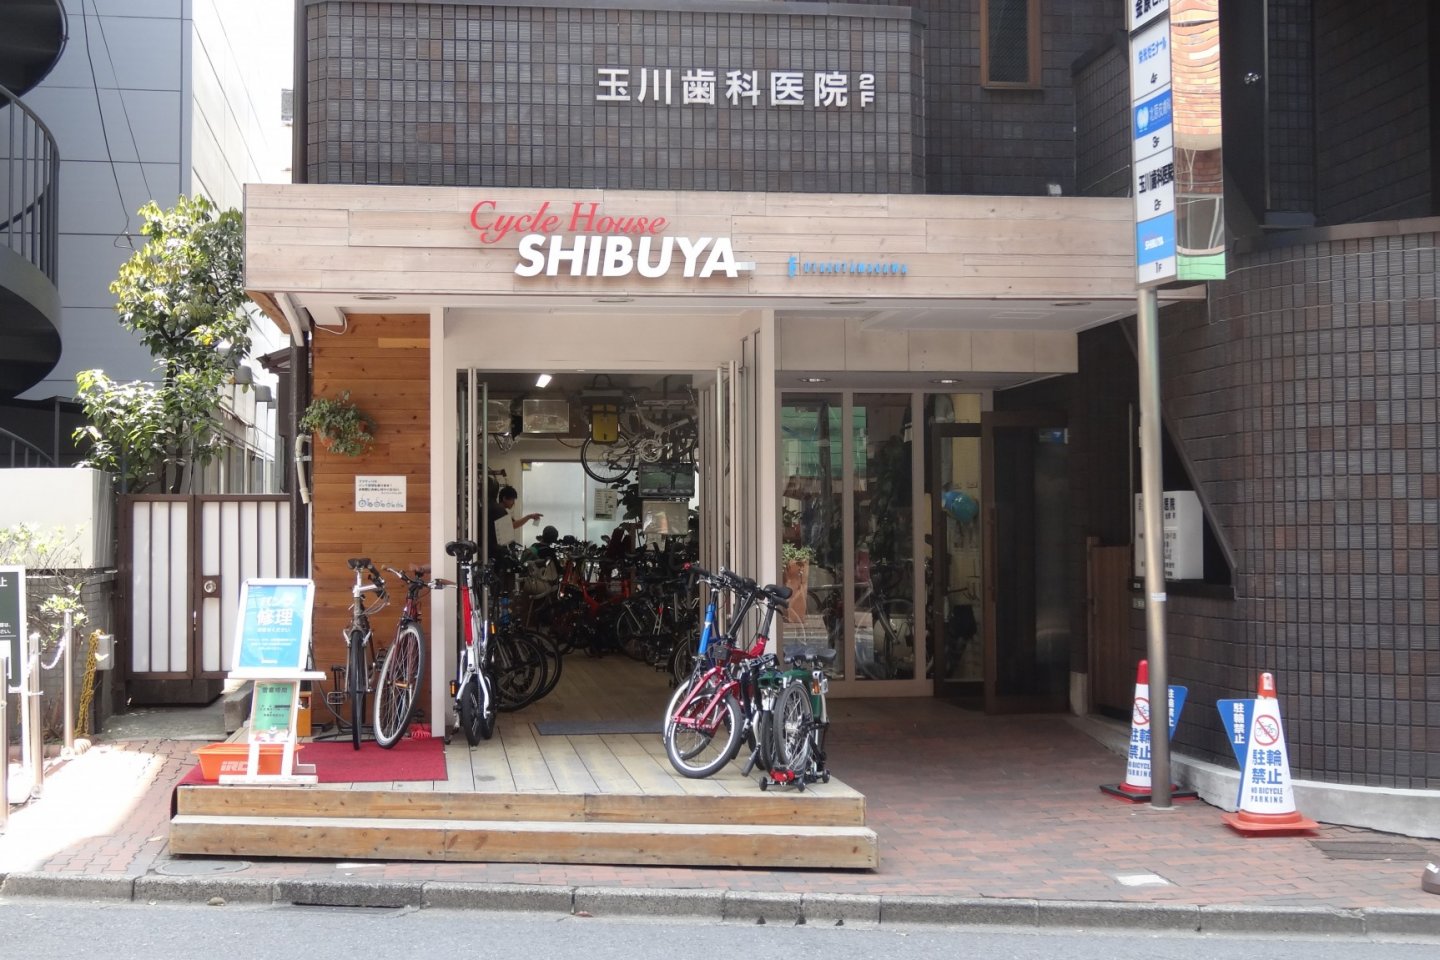 ไซเคิล เฮ้าส์ ชิบุยะ (Cycle House Shibuya)